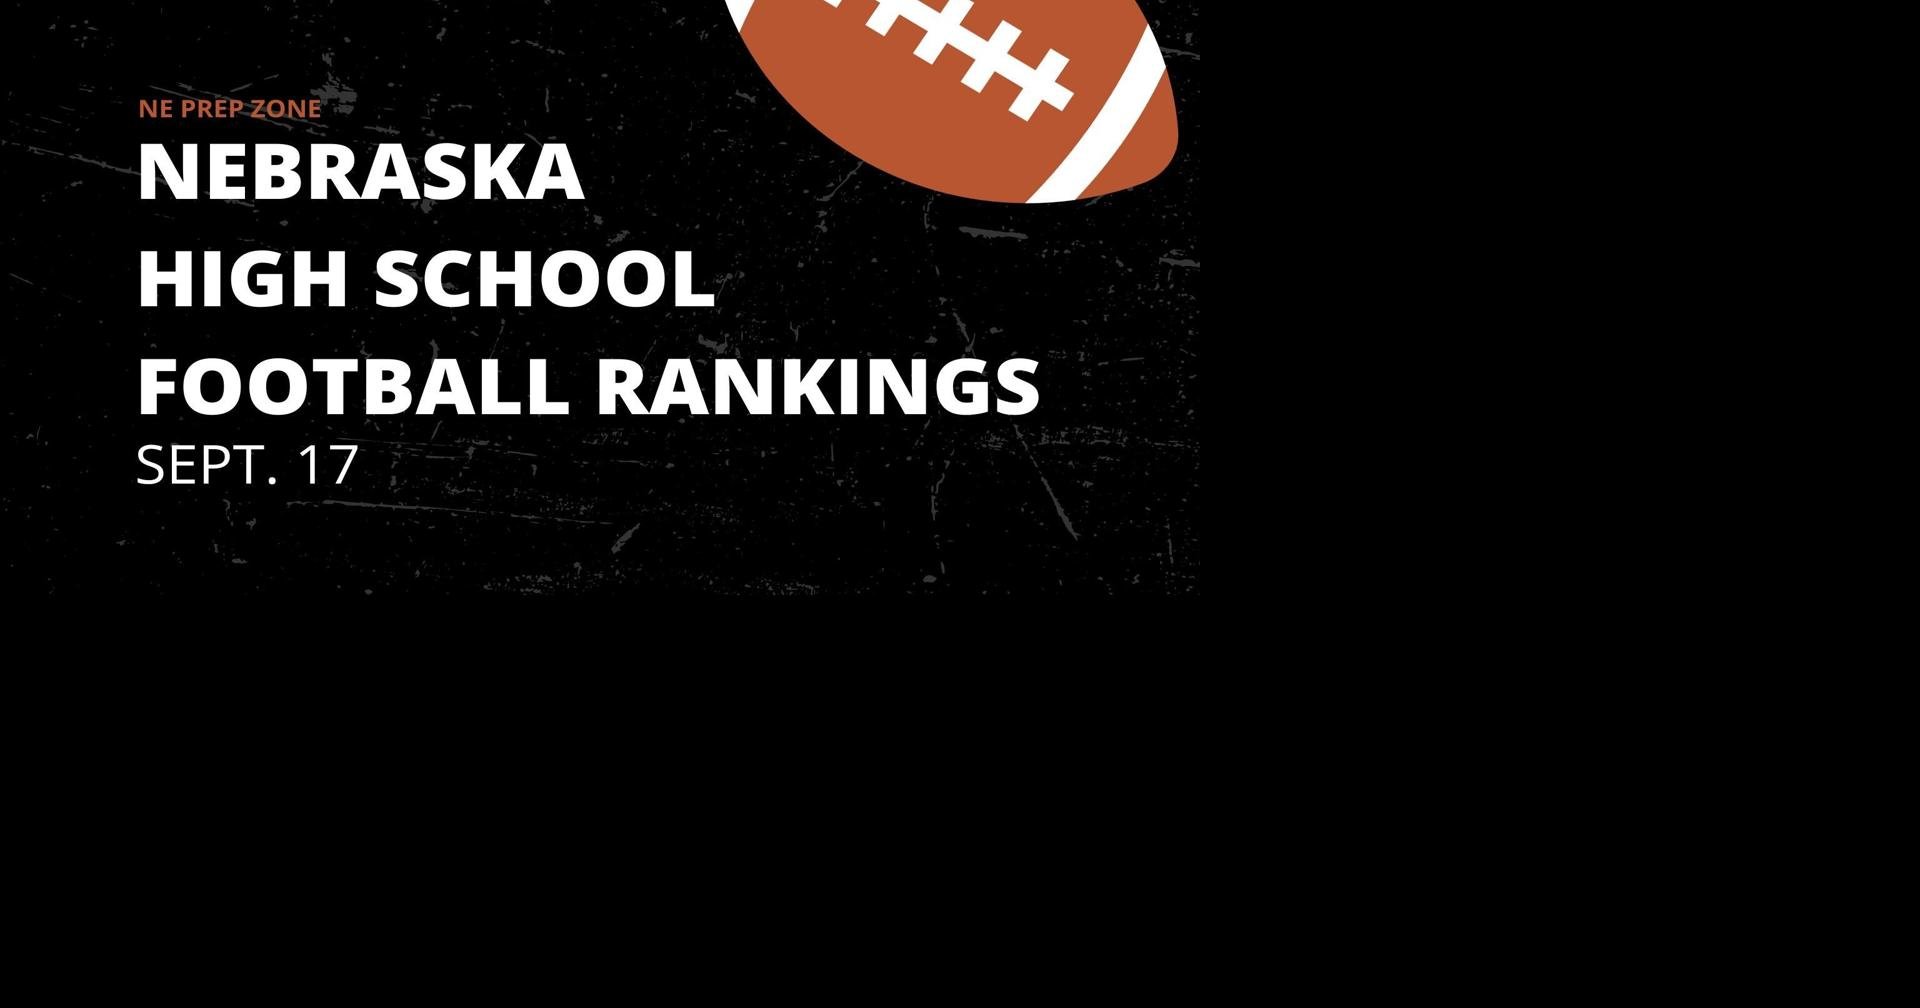 Nebraska high school football rankings, Sept. 17